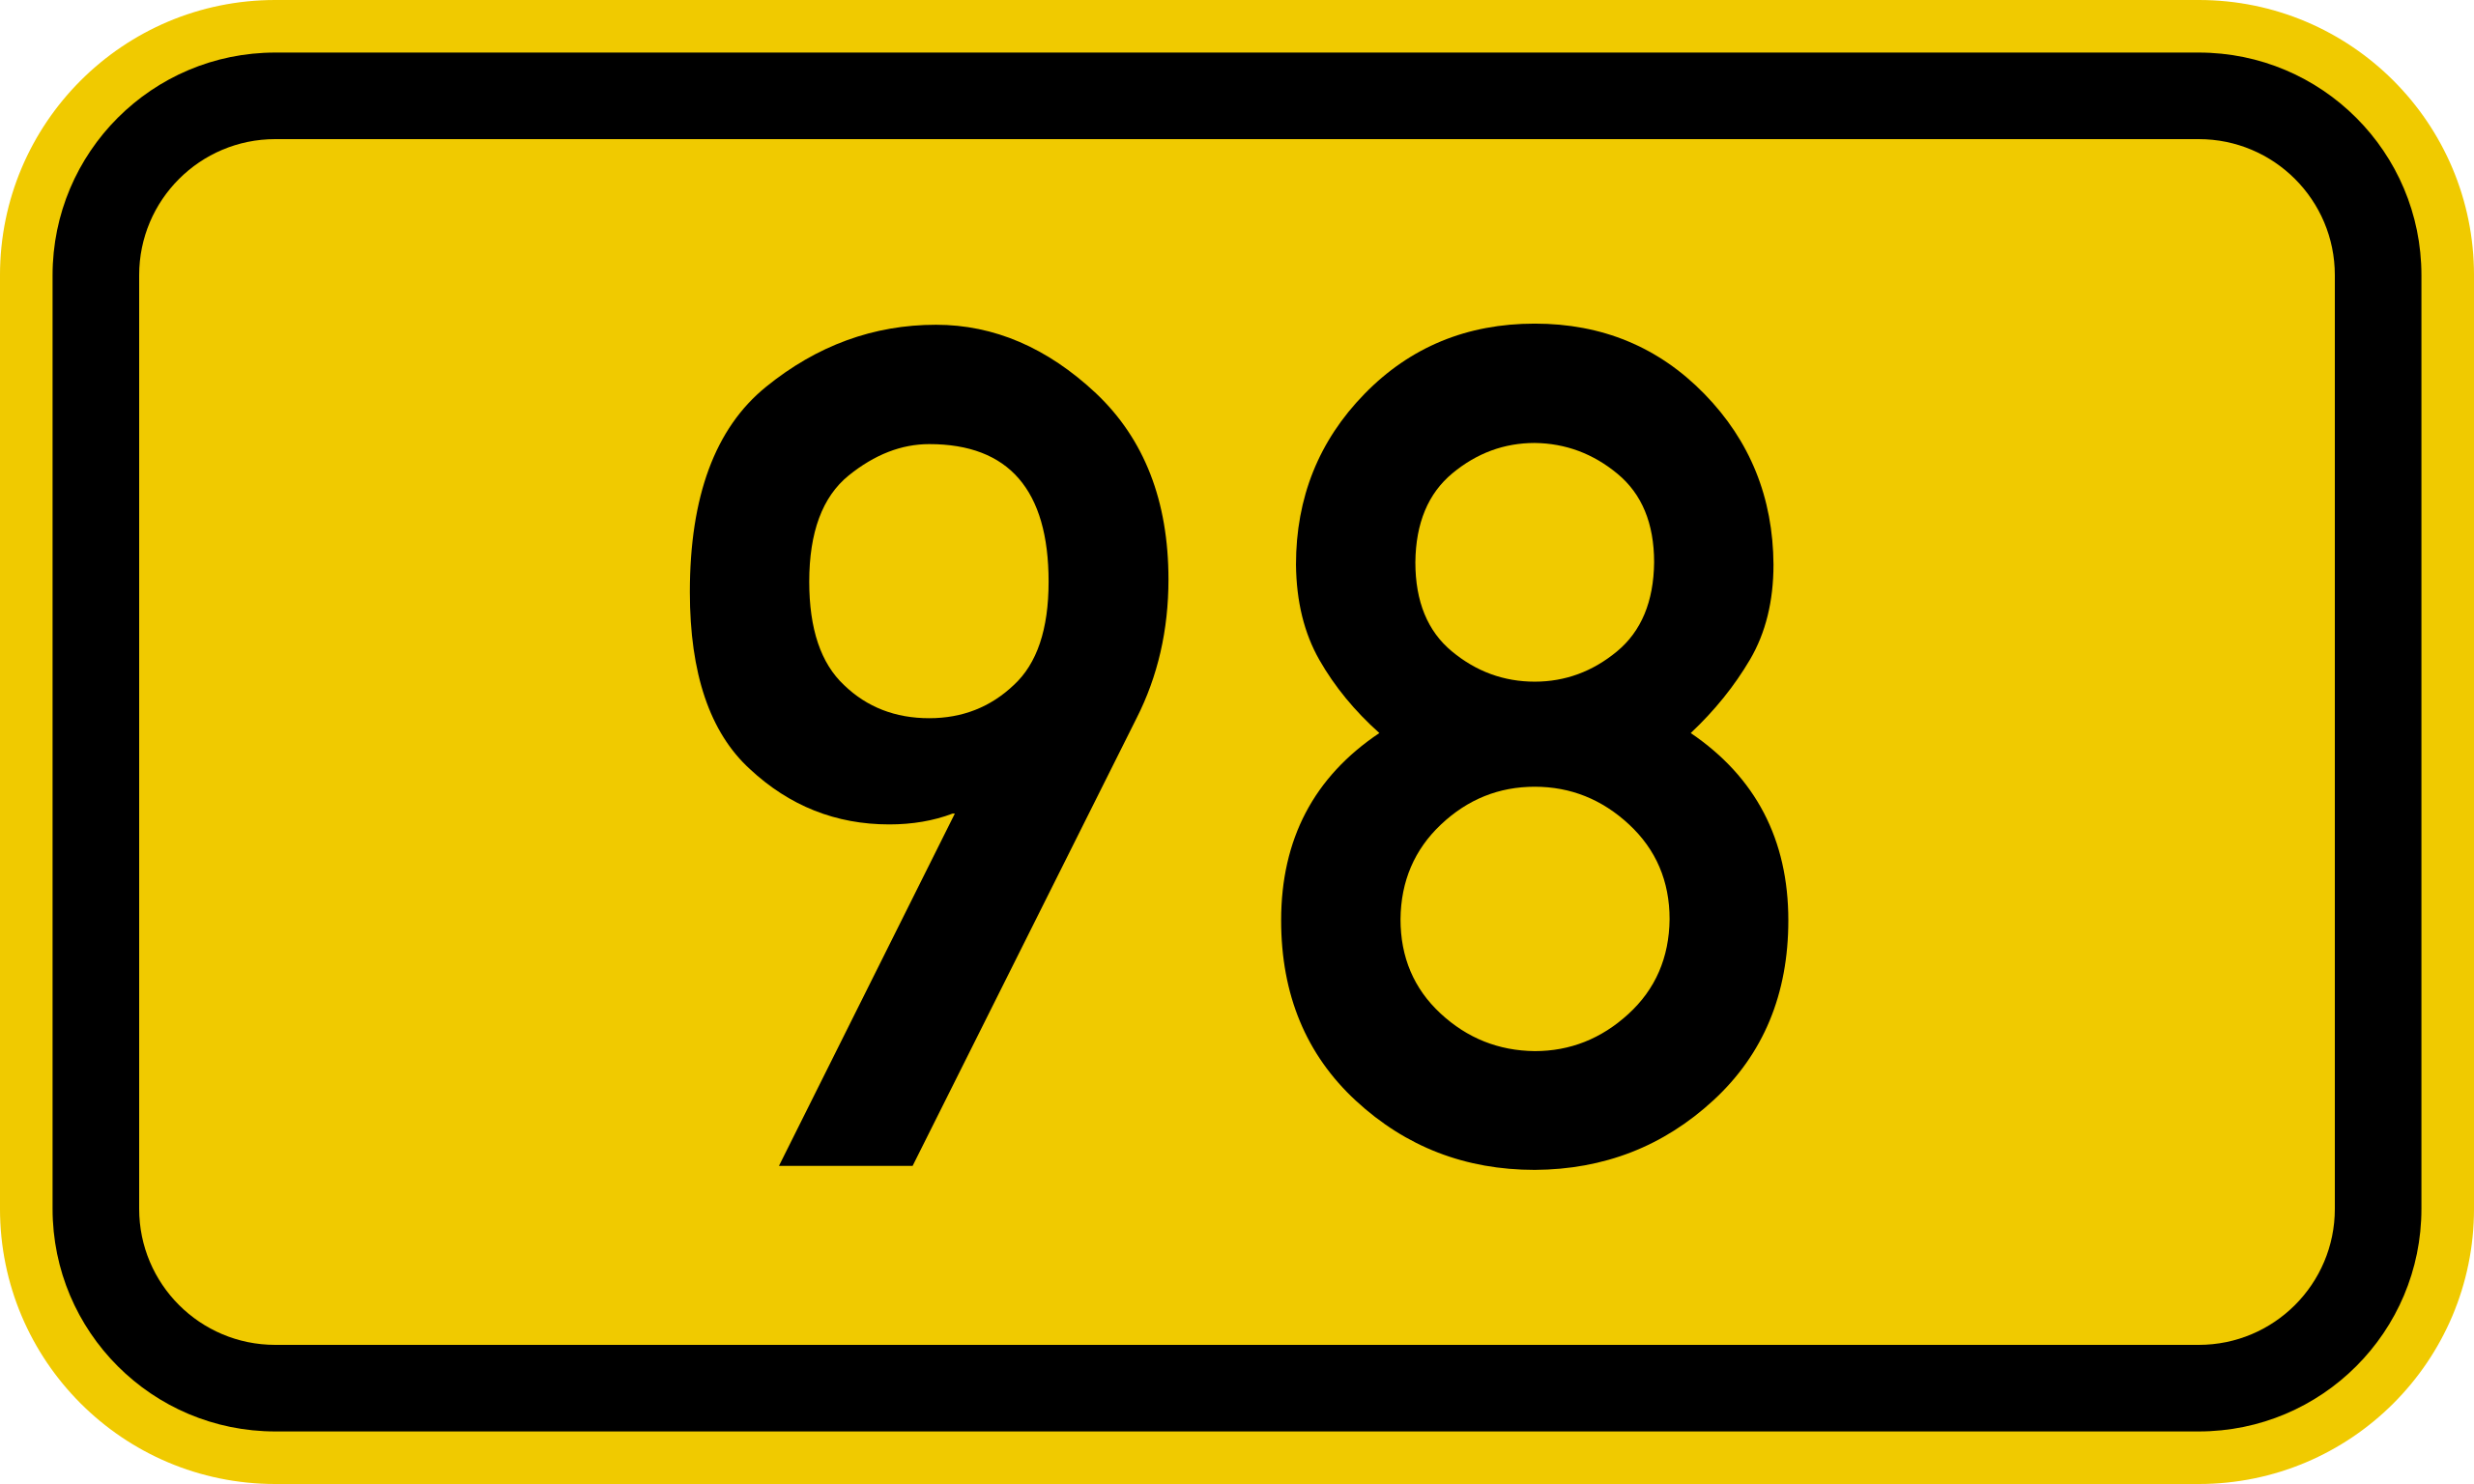 ファイル:Bundesstraße 98 number.svg - Wikipedia